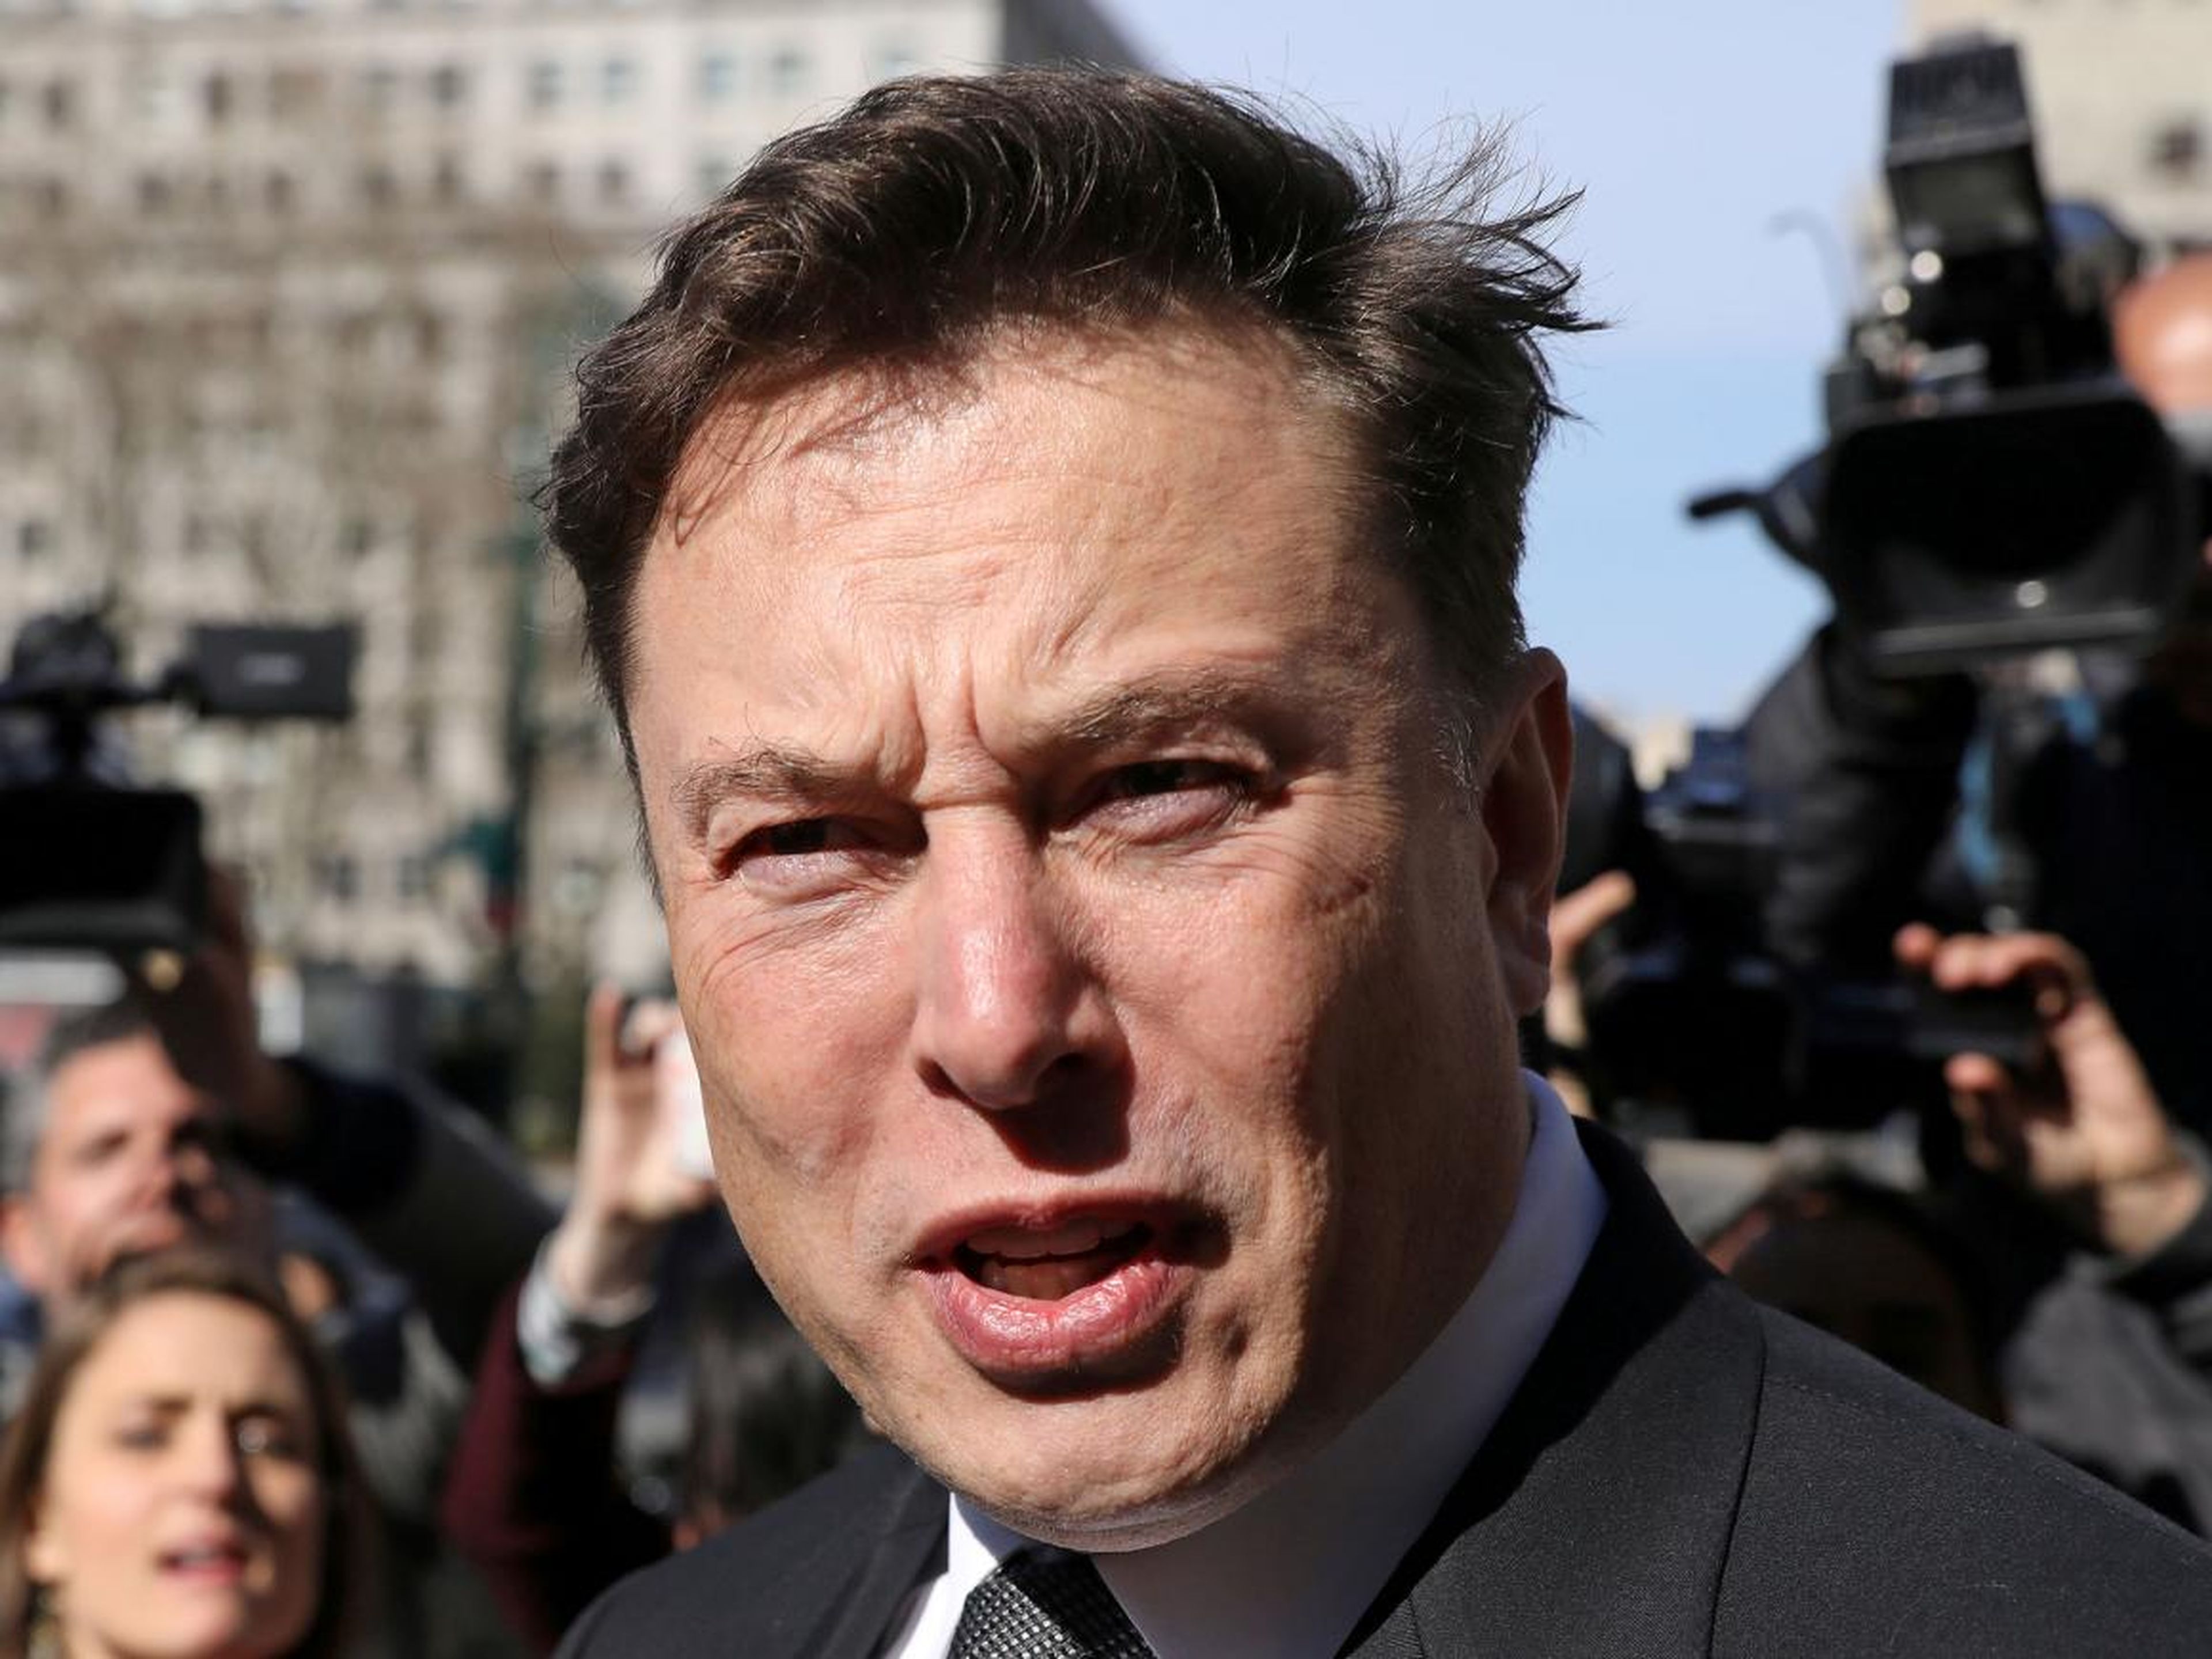 El presidente ejecutivo de Tesla, Elon Musk, abandona el tribunal federal de Manhattan después de una audiencia sobre su acuerdo de fraude con la Comisión de Bolsa y Valores (SEC) en la ciudad de Nueva York, Estados Unidos, 4 de abril de 2019.